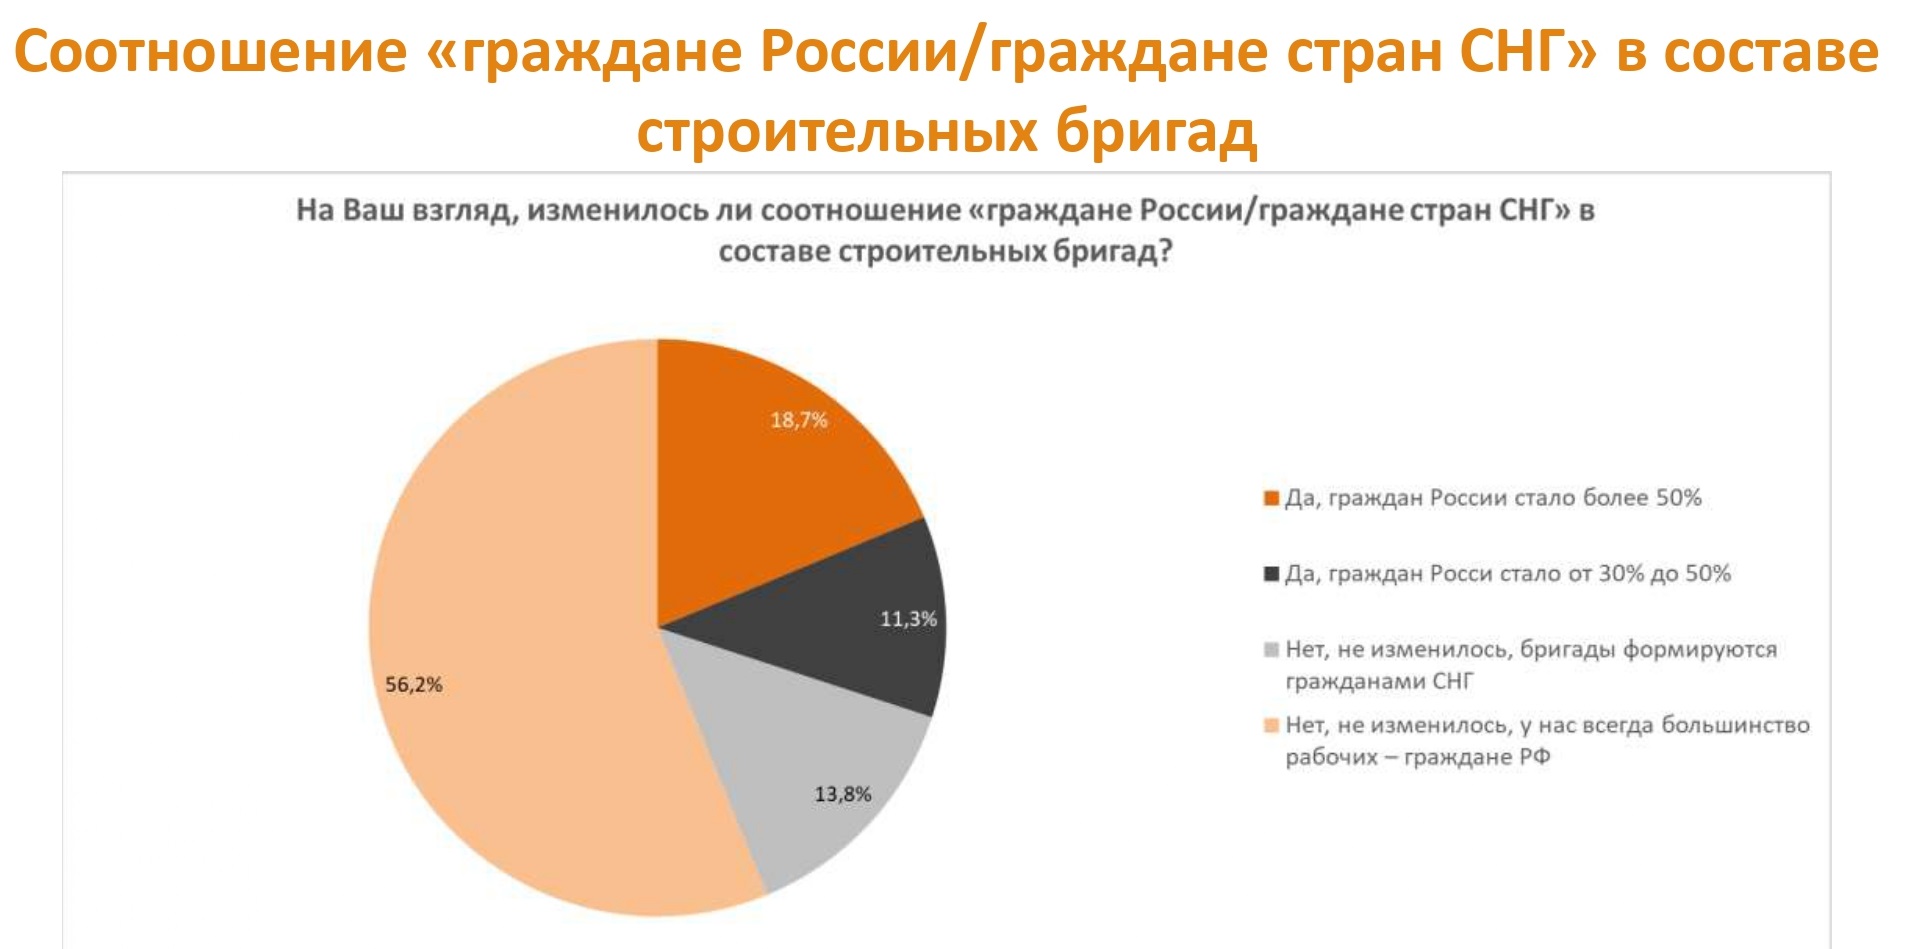 Динамика помесячного изменения среднего размера ипотечного жилищного кредита в России, млн ₽